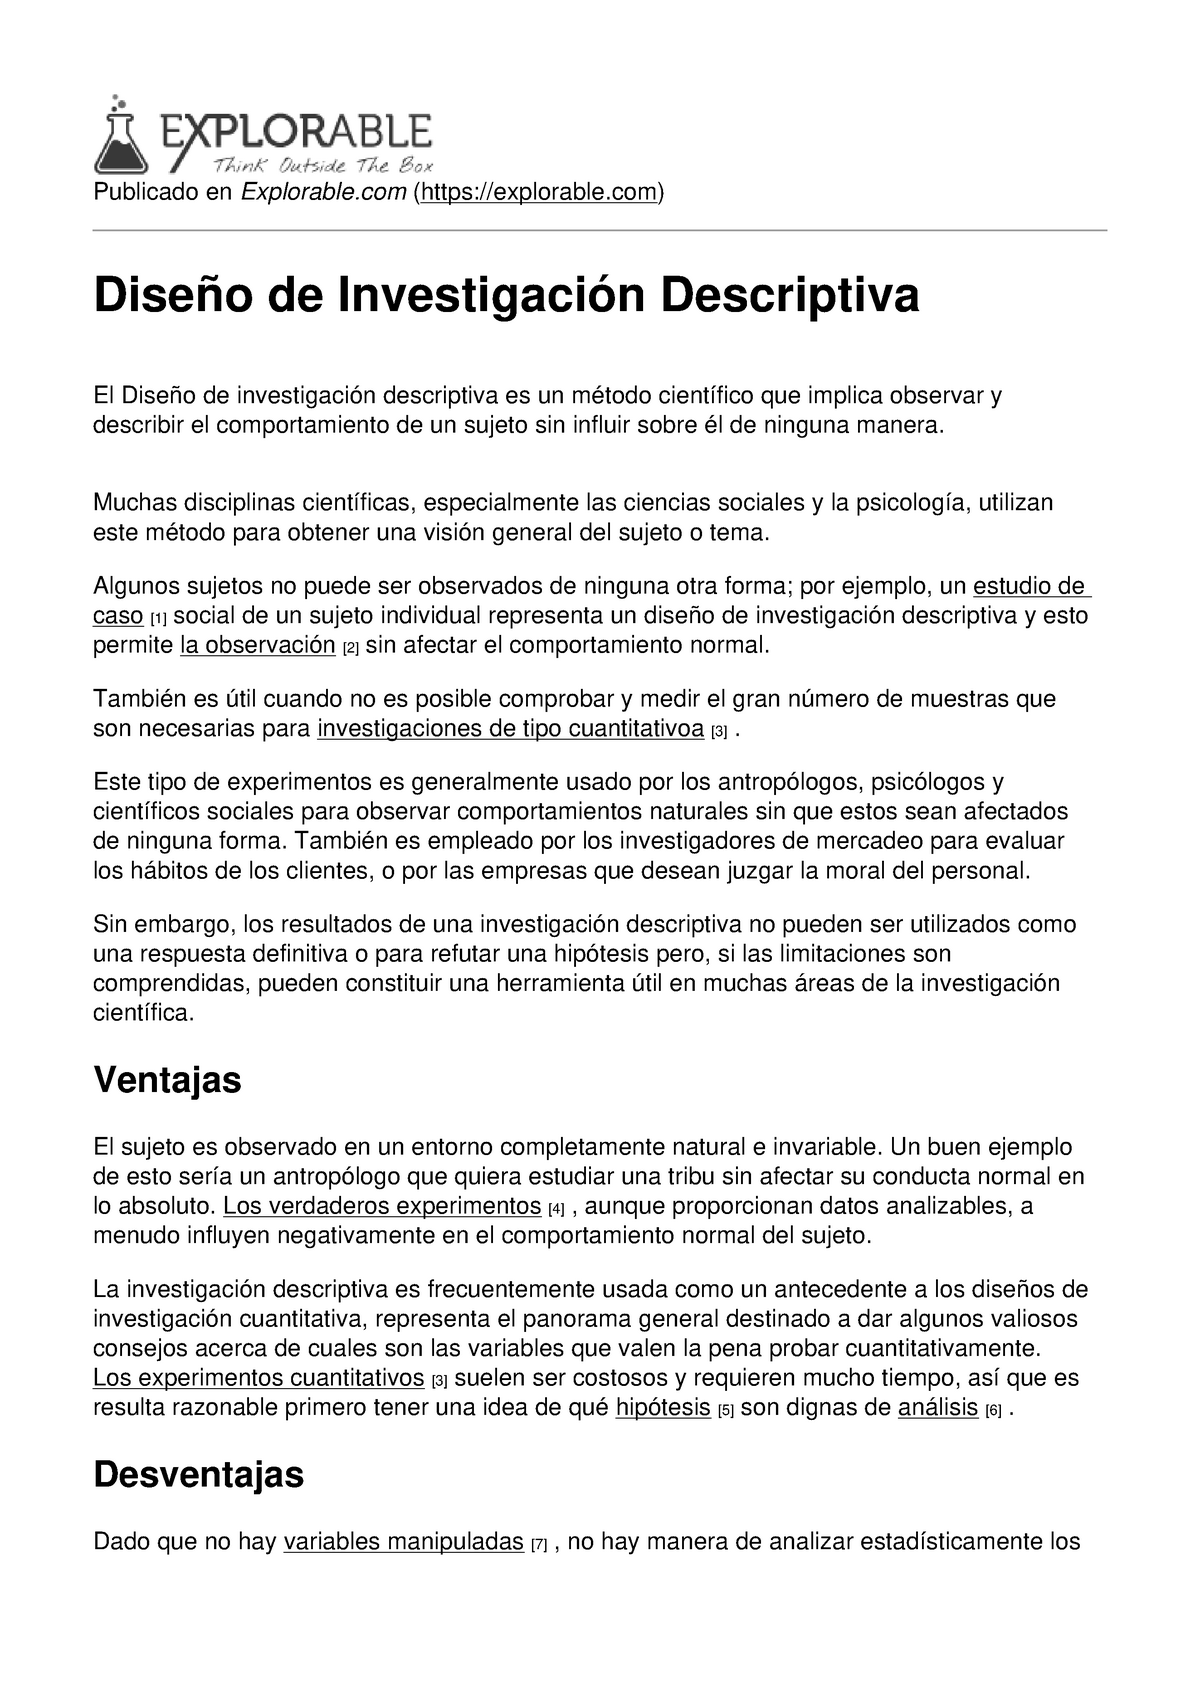 METODOLOGIA DE LA INVESTIGACION DESCRIPTIVA - Publicado en Explorable  (explorable) Diseño de - Studocu